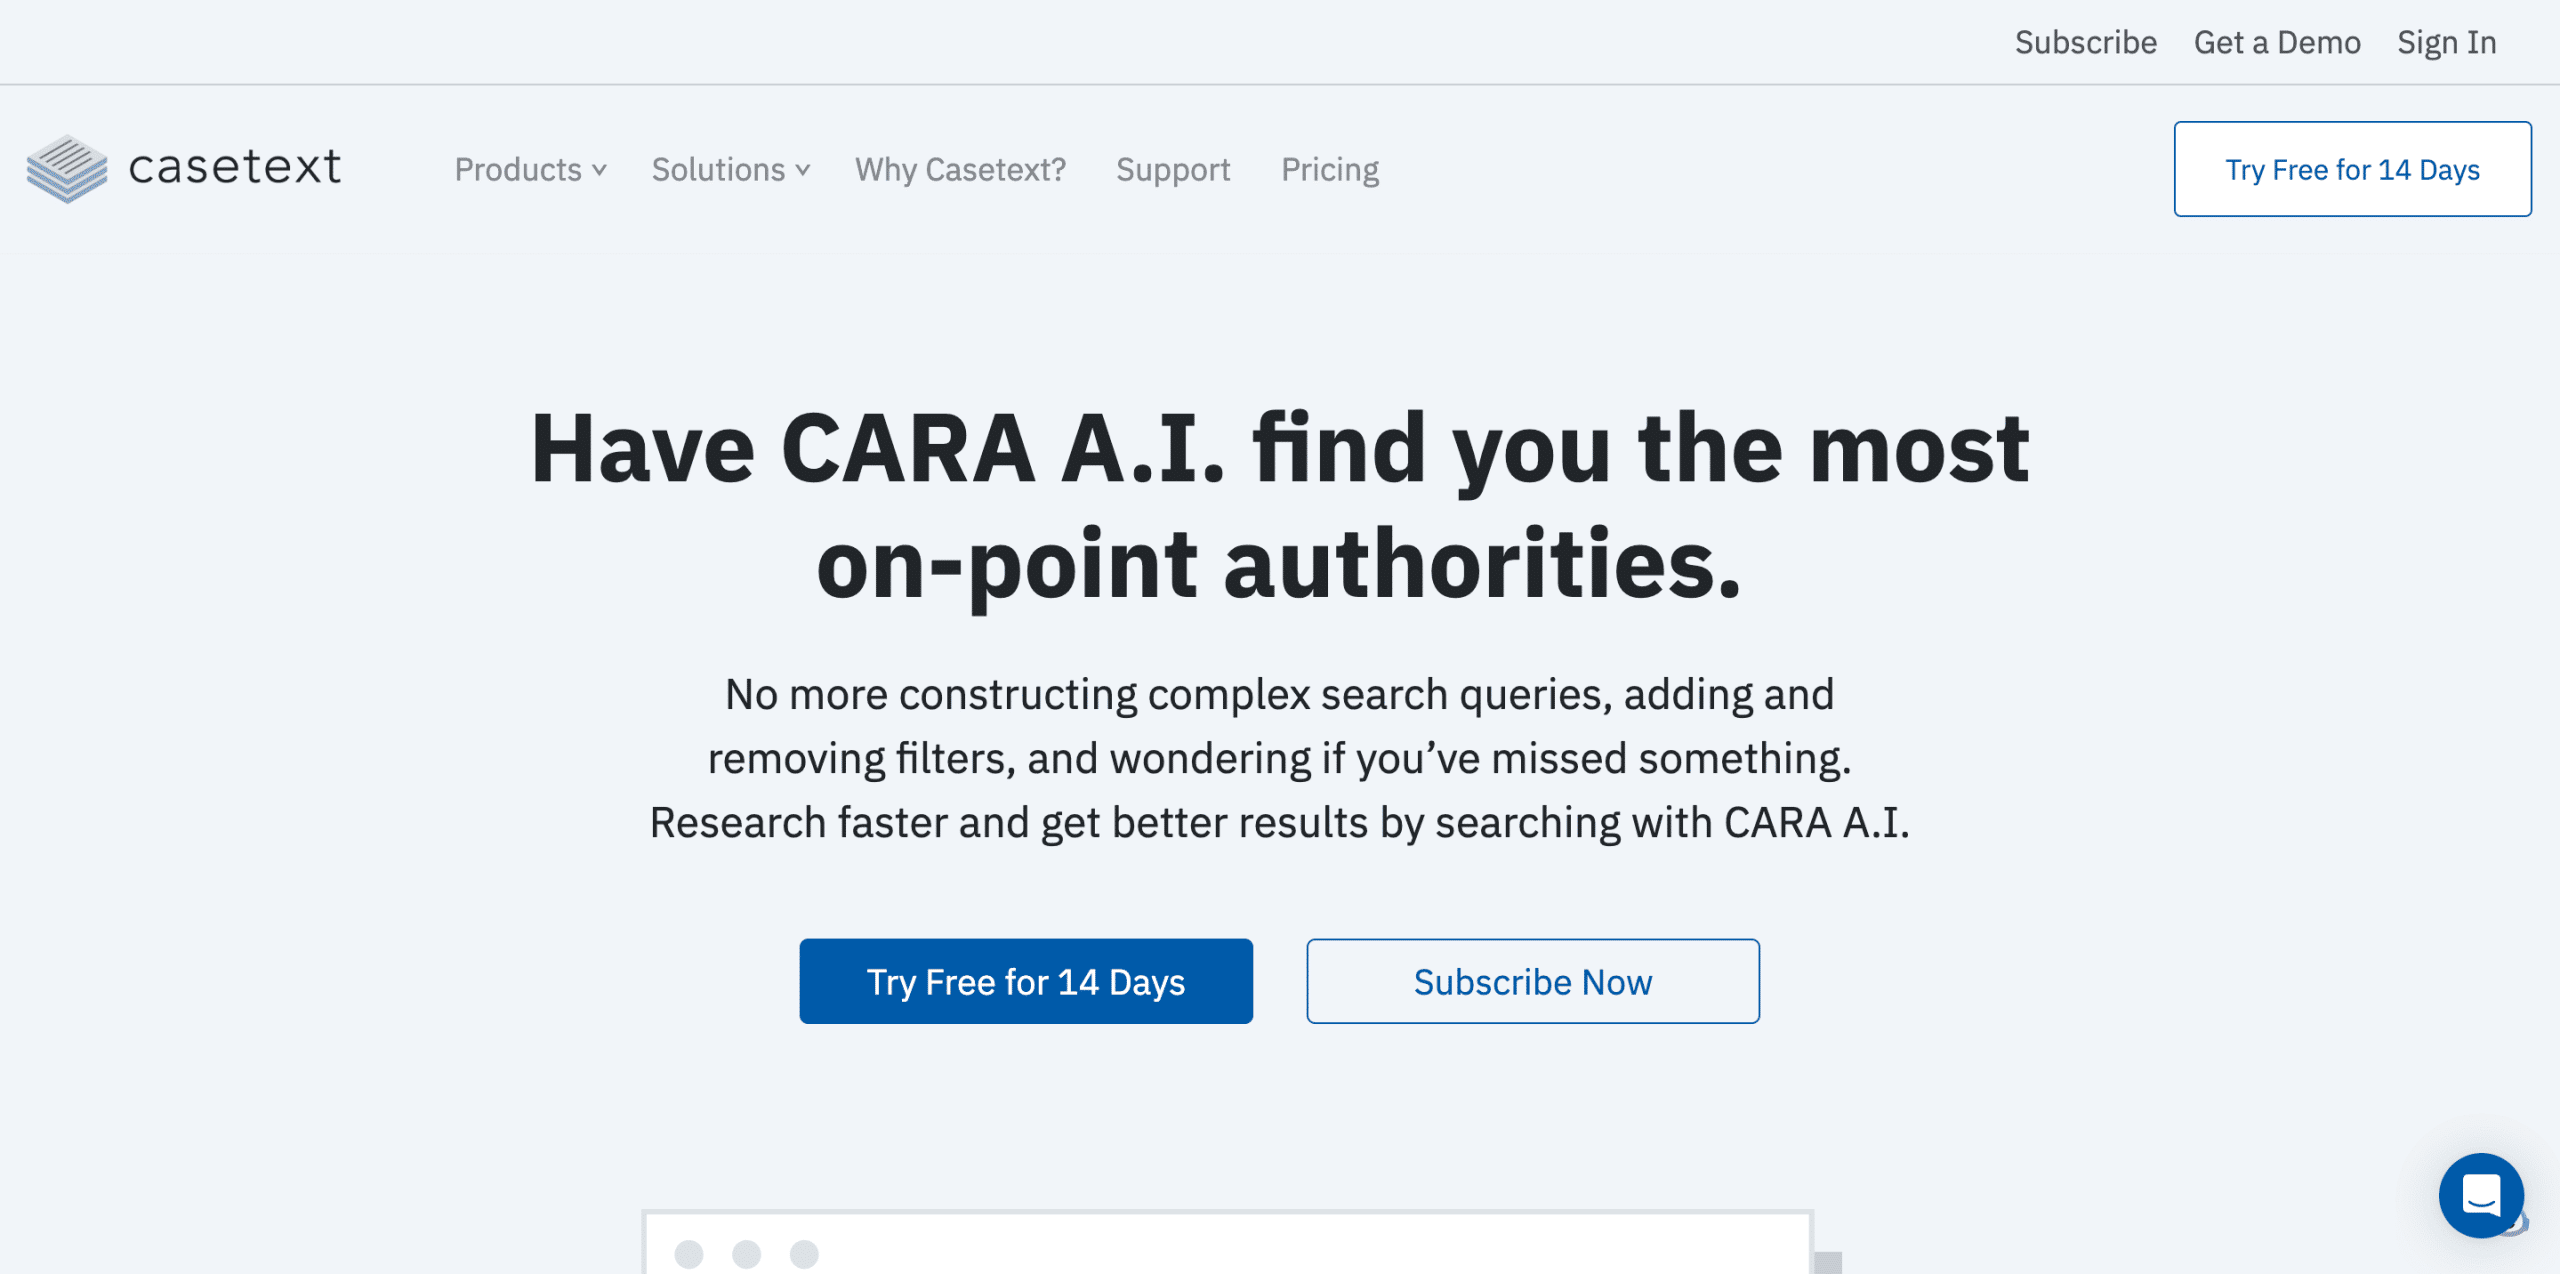 CARA AI Case Text